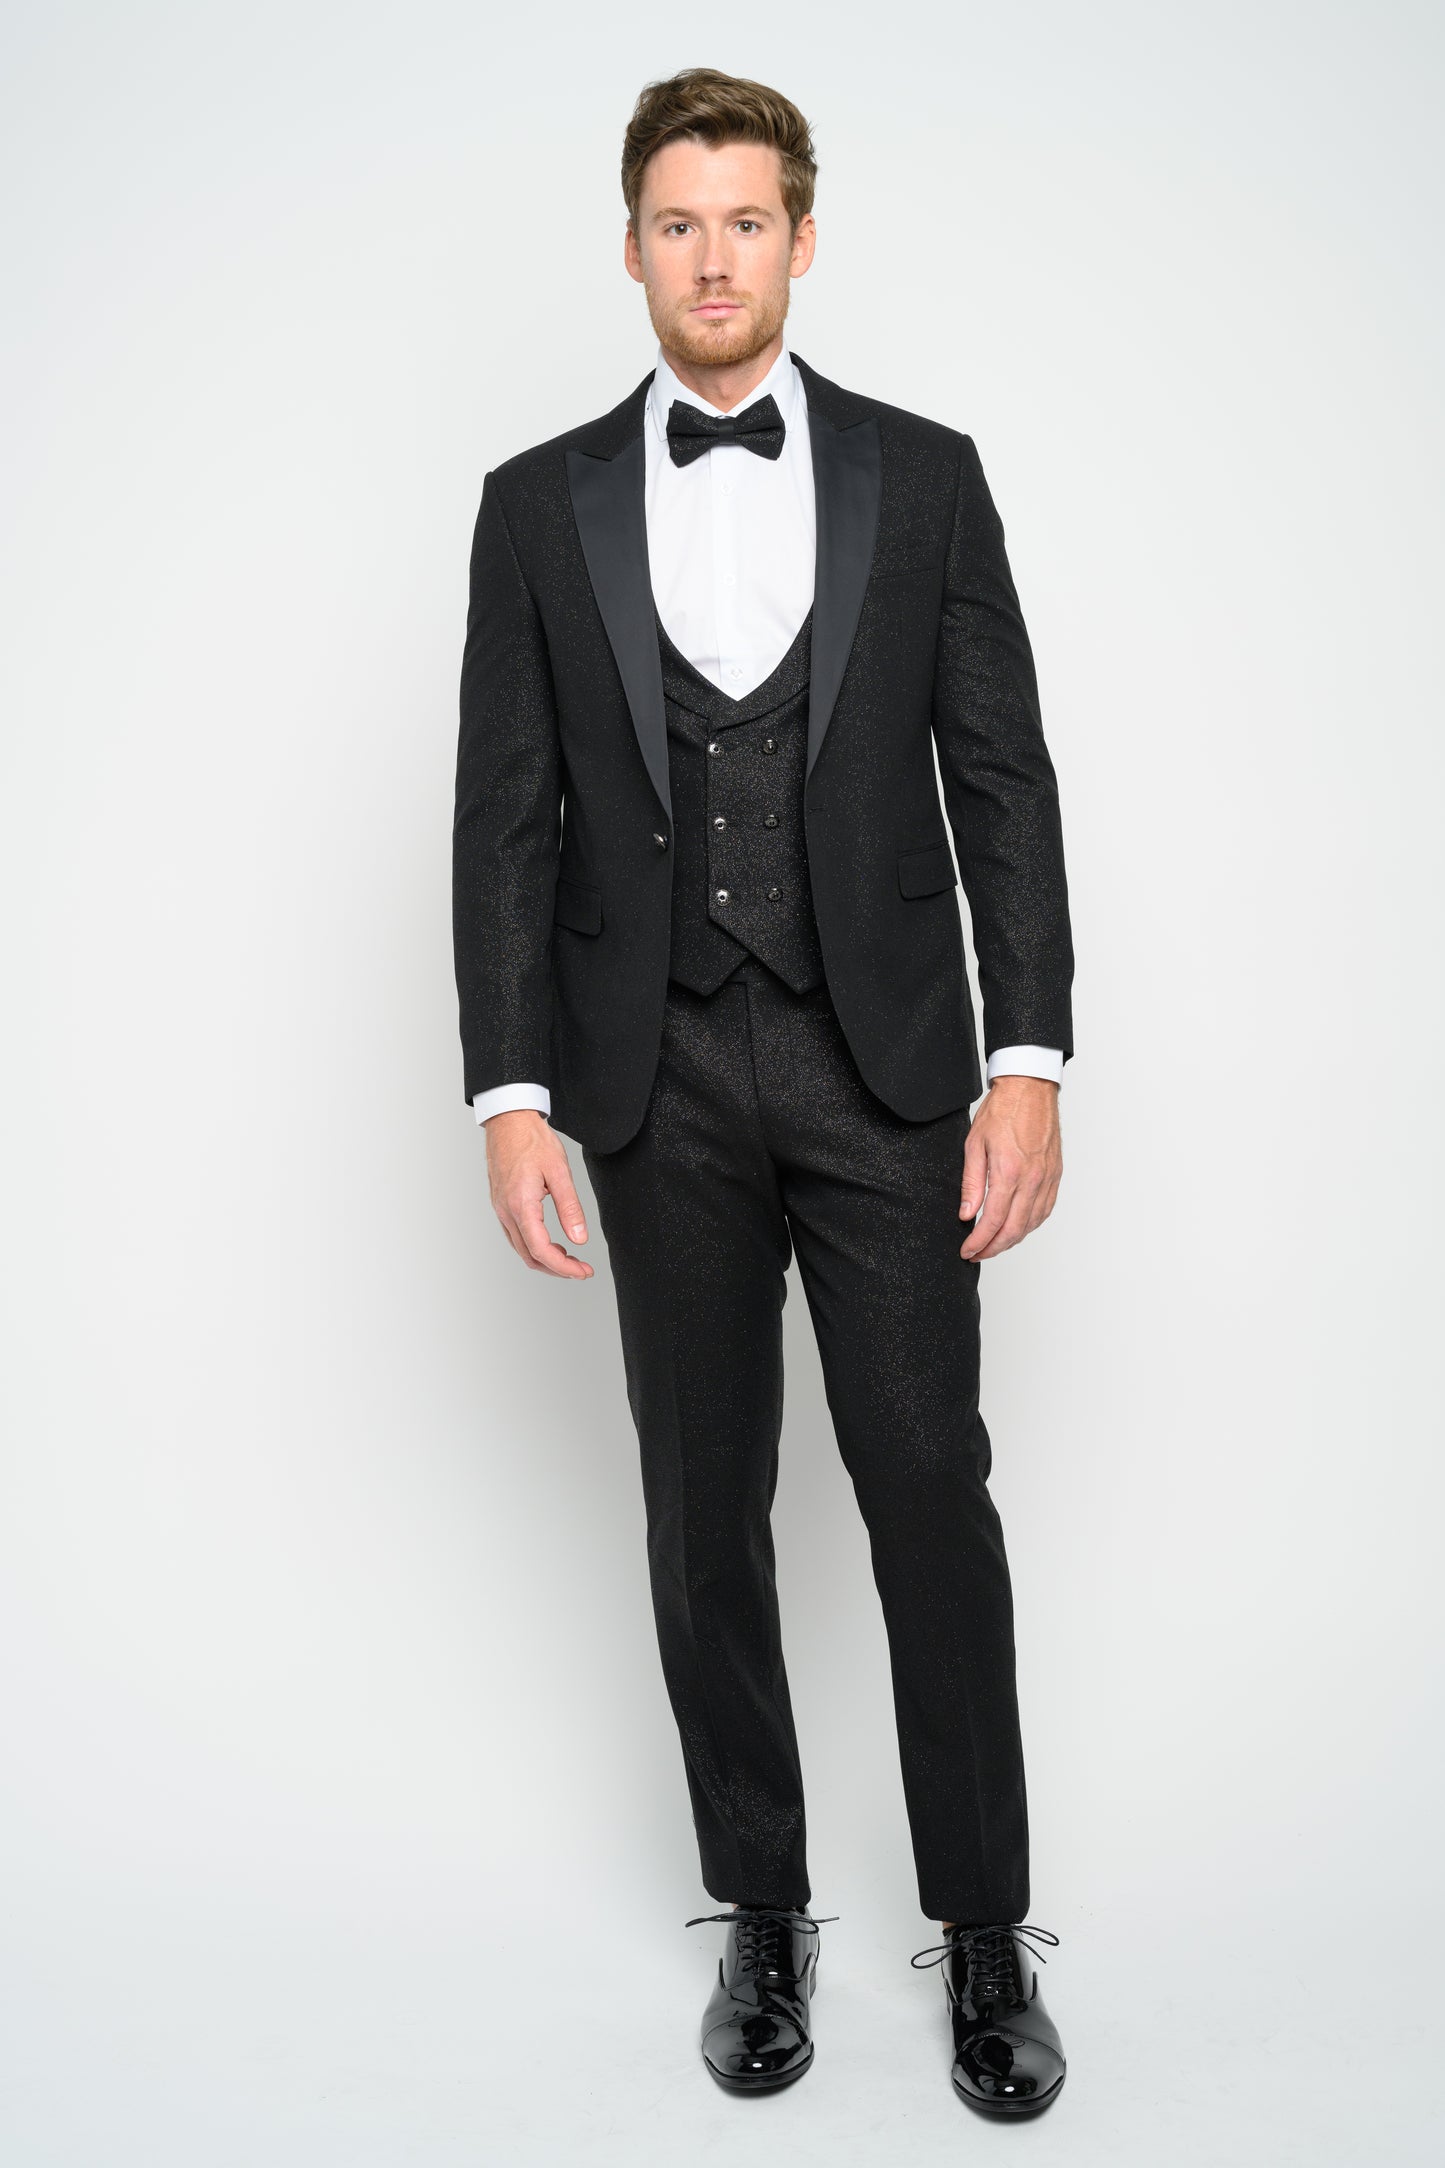 Men's Black Modern Sequin Tuxedo Set